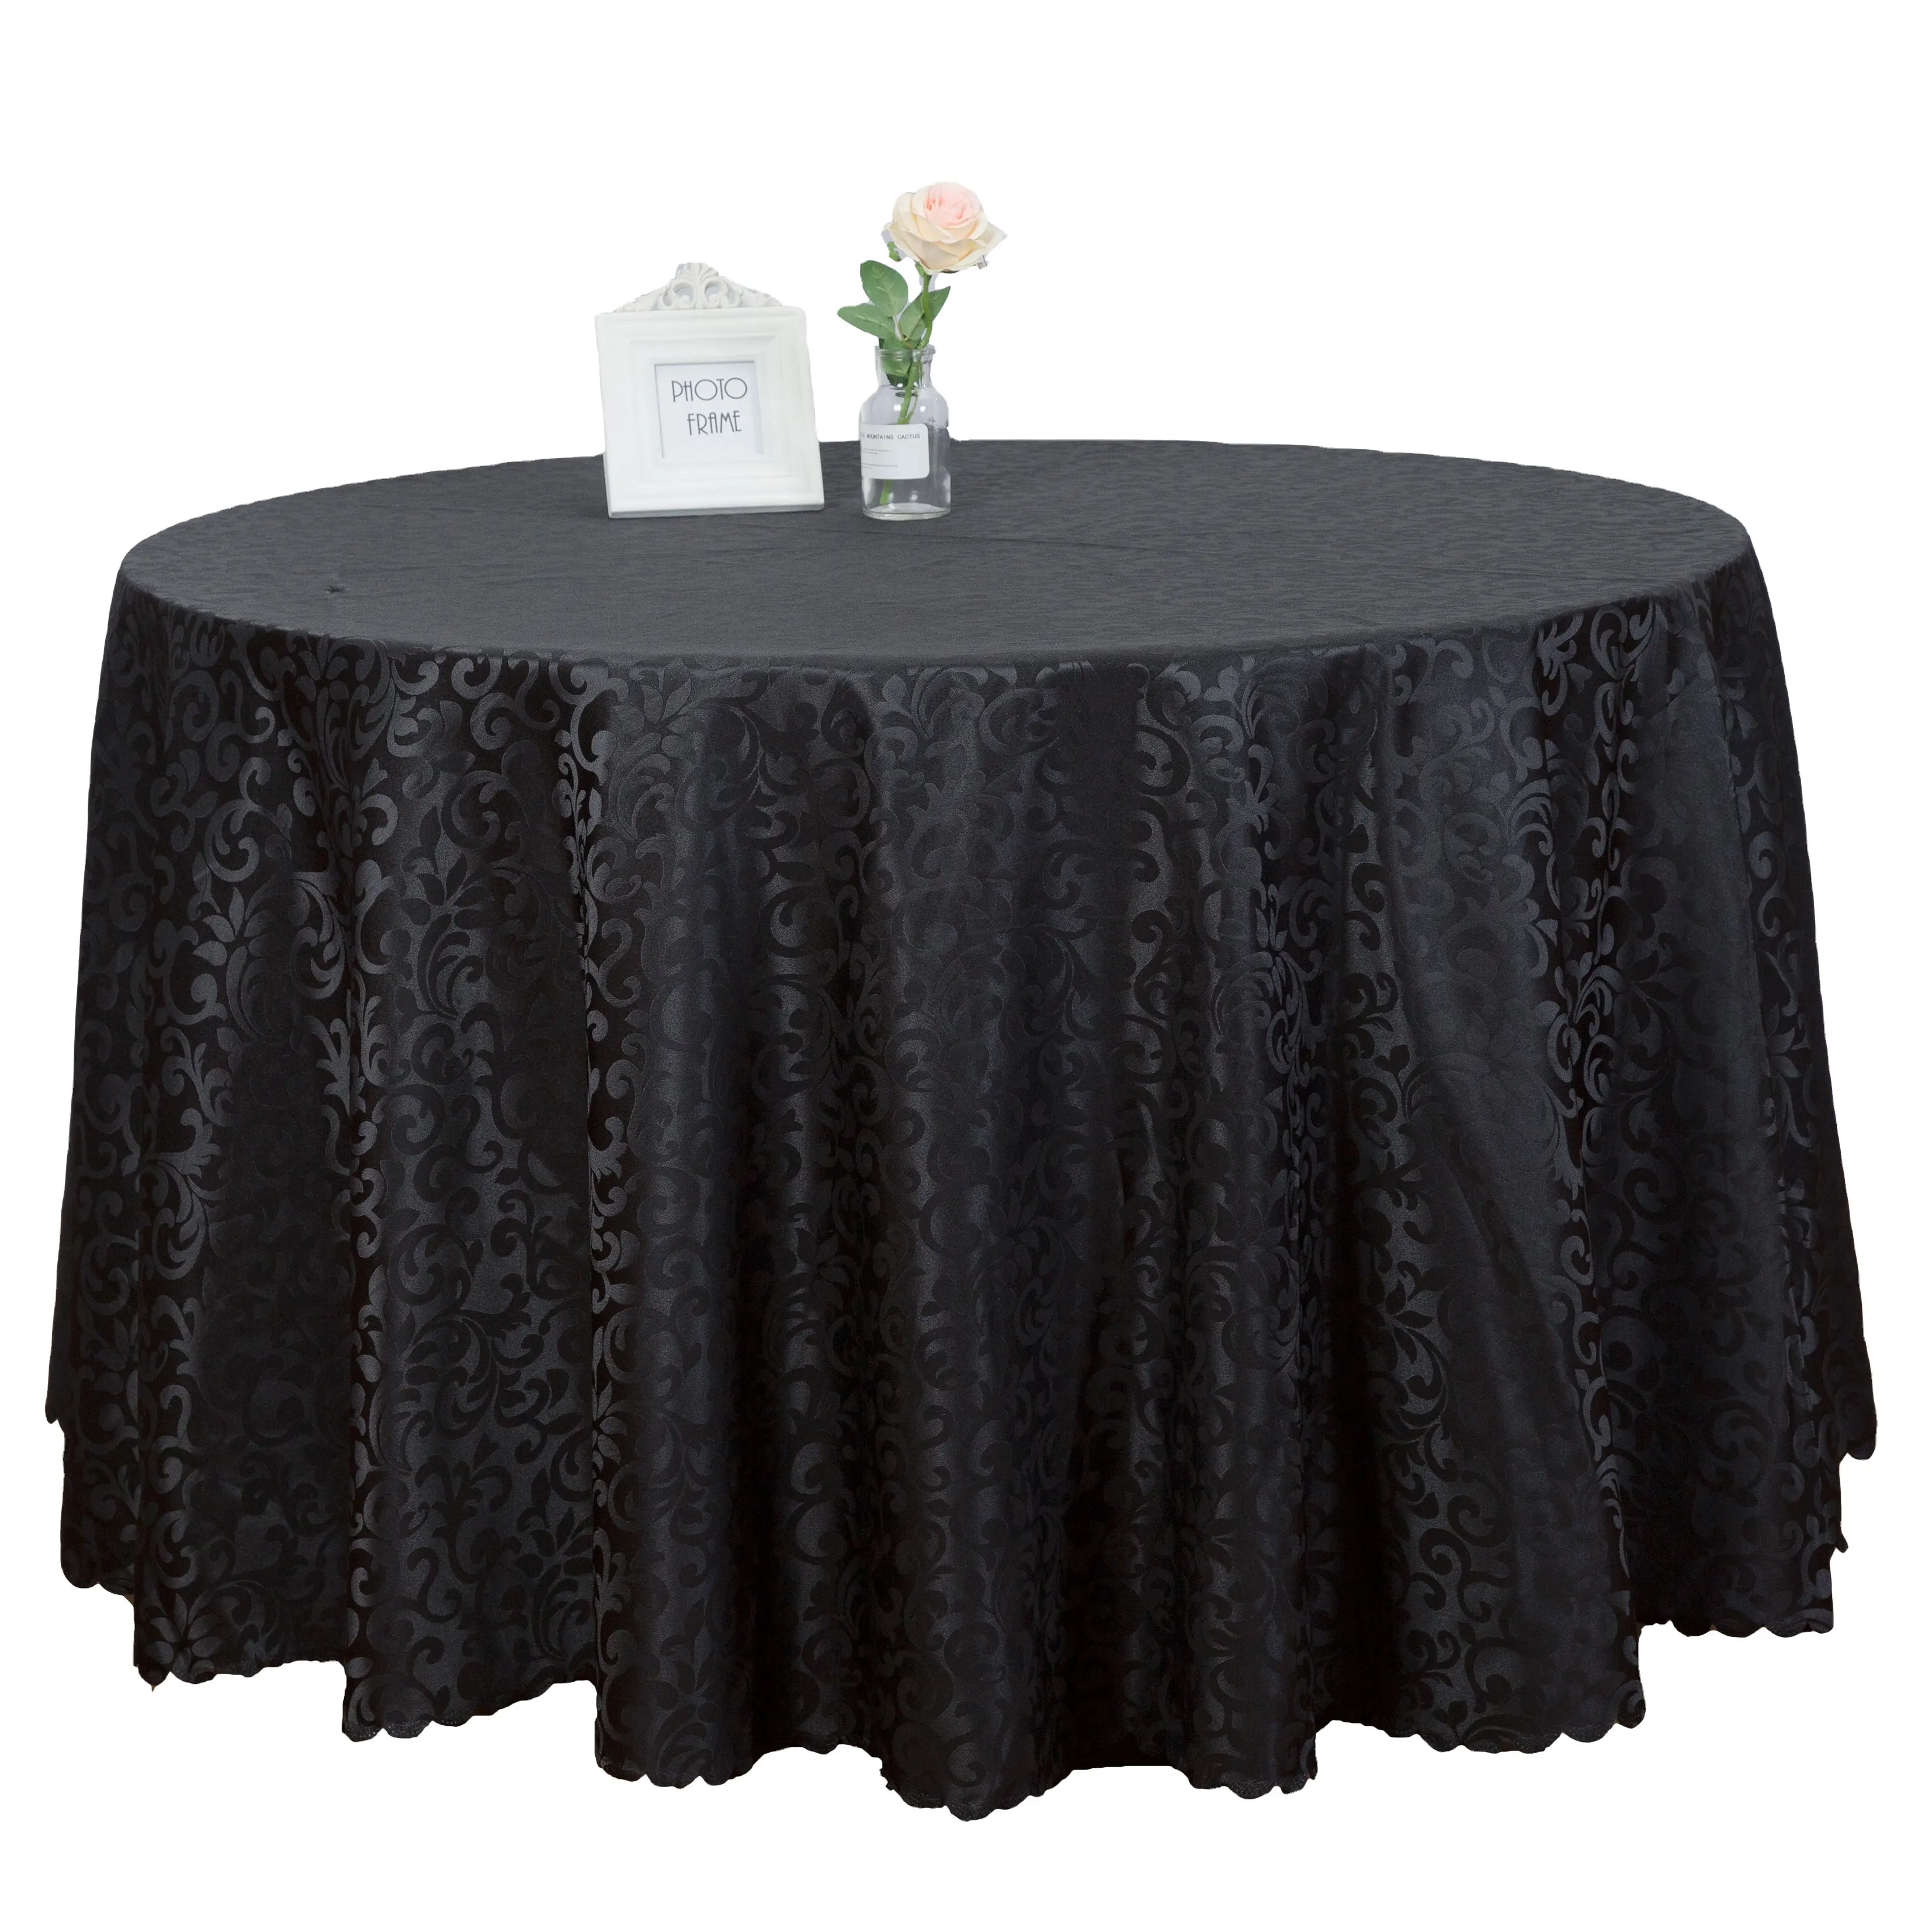 100% polyester 120 yuvarlak masa örtüsü siyah düğün